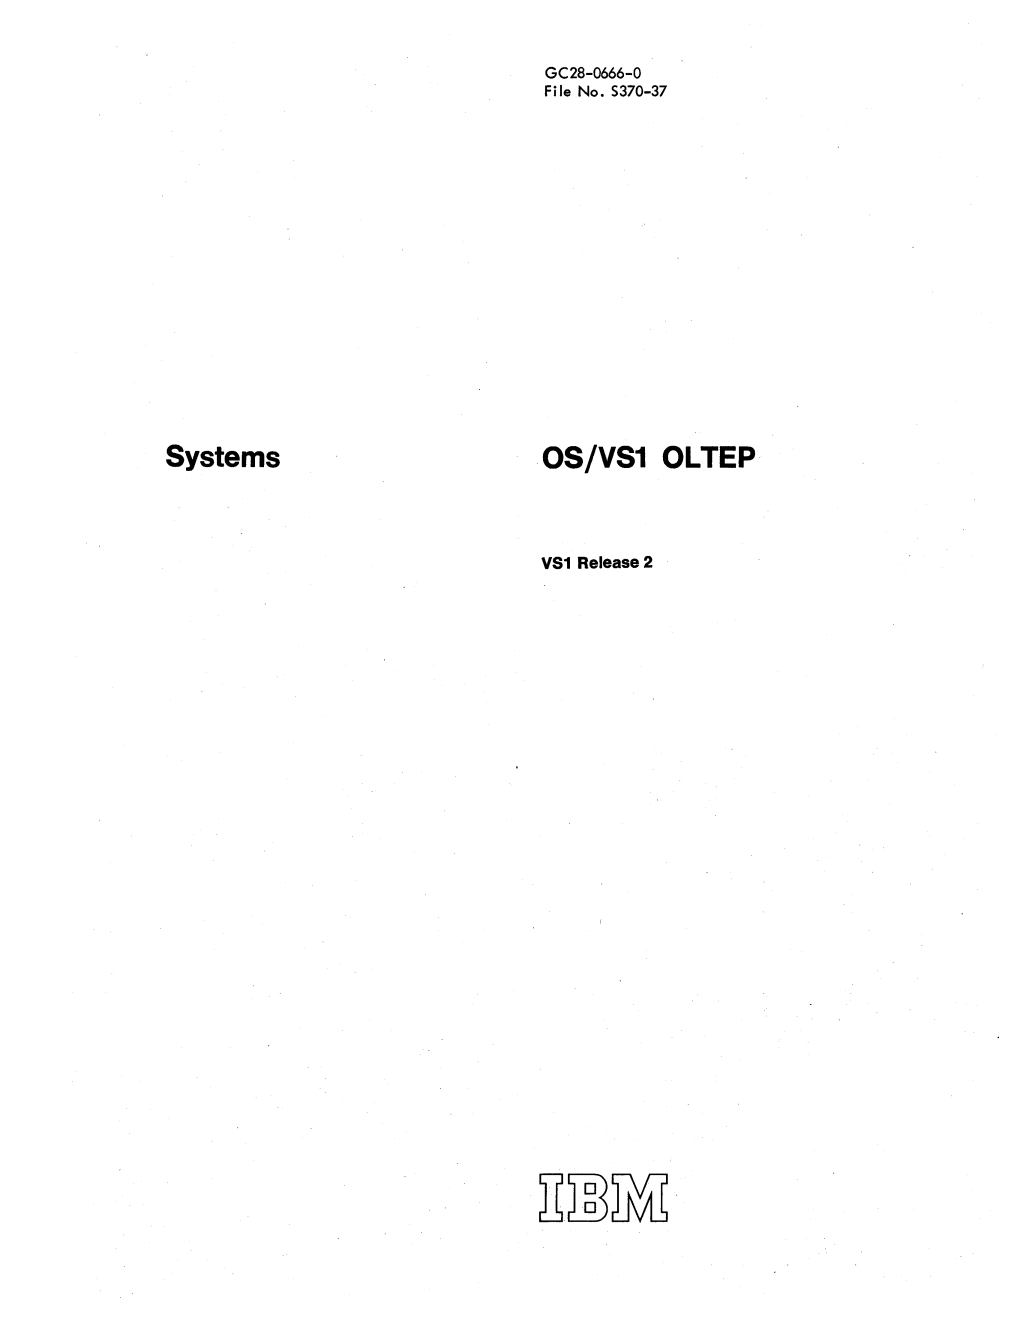 Systems OS/VS1 OLTEP